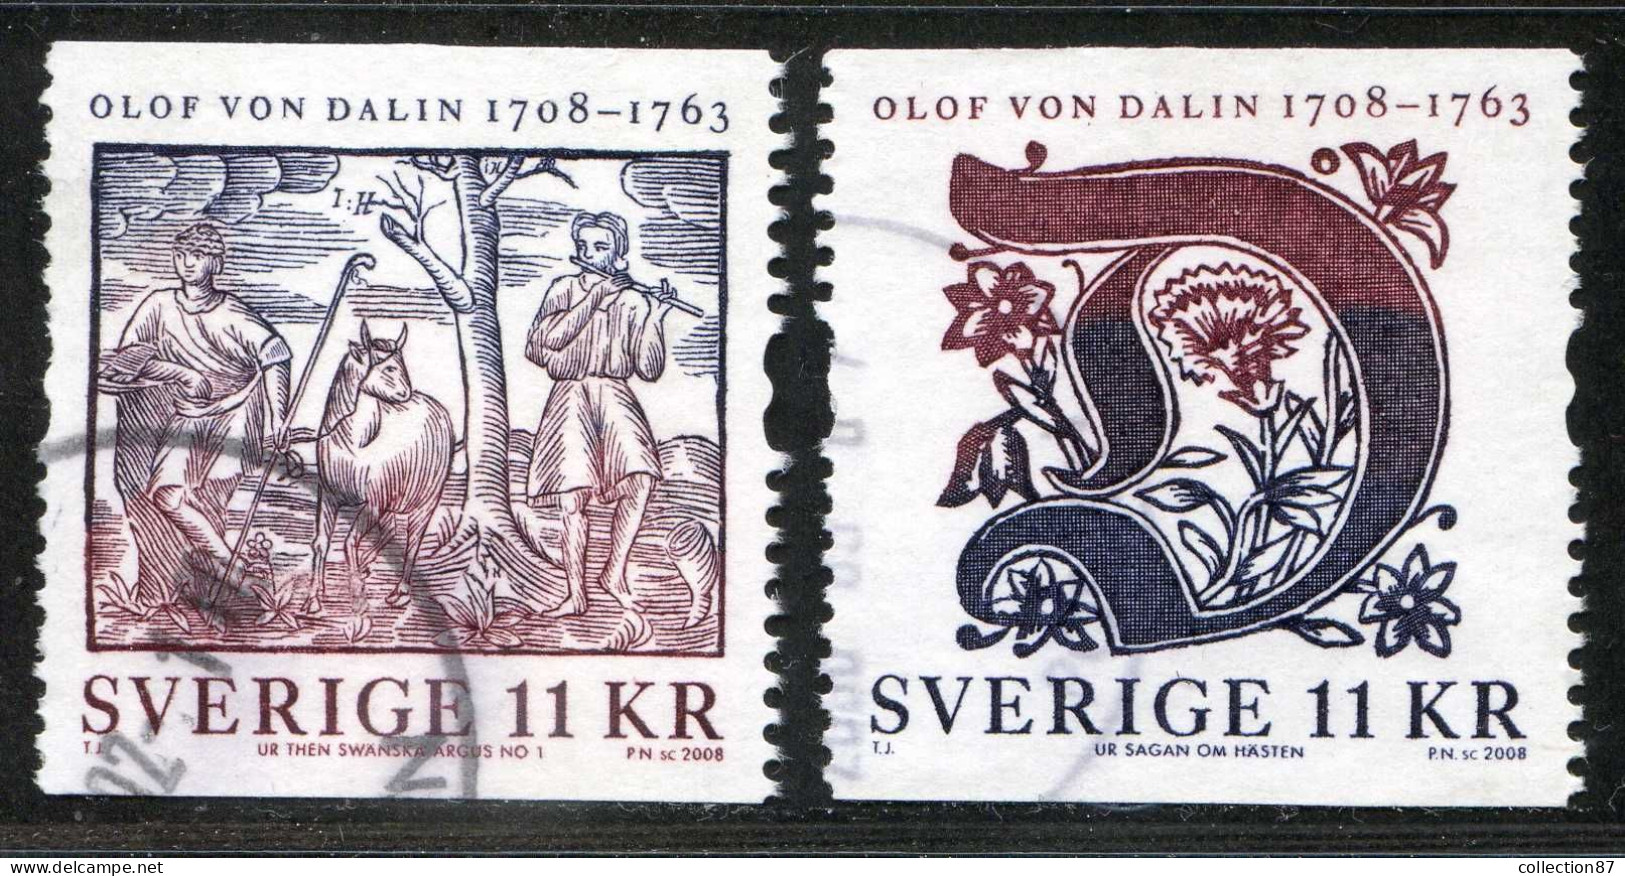 Réf 77 < SUEDE Année 2008 < Yvert N° 2609 à 2610 Ø Used < SWEDEN < Olof Von Dalin > Ecrivain Et Historien - Oblitérés